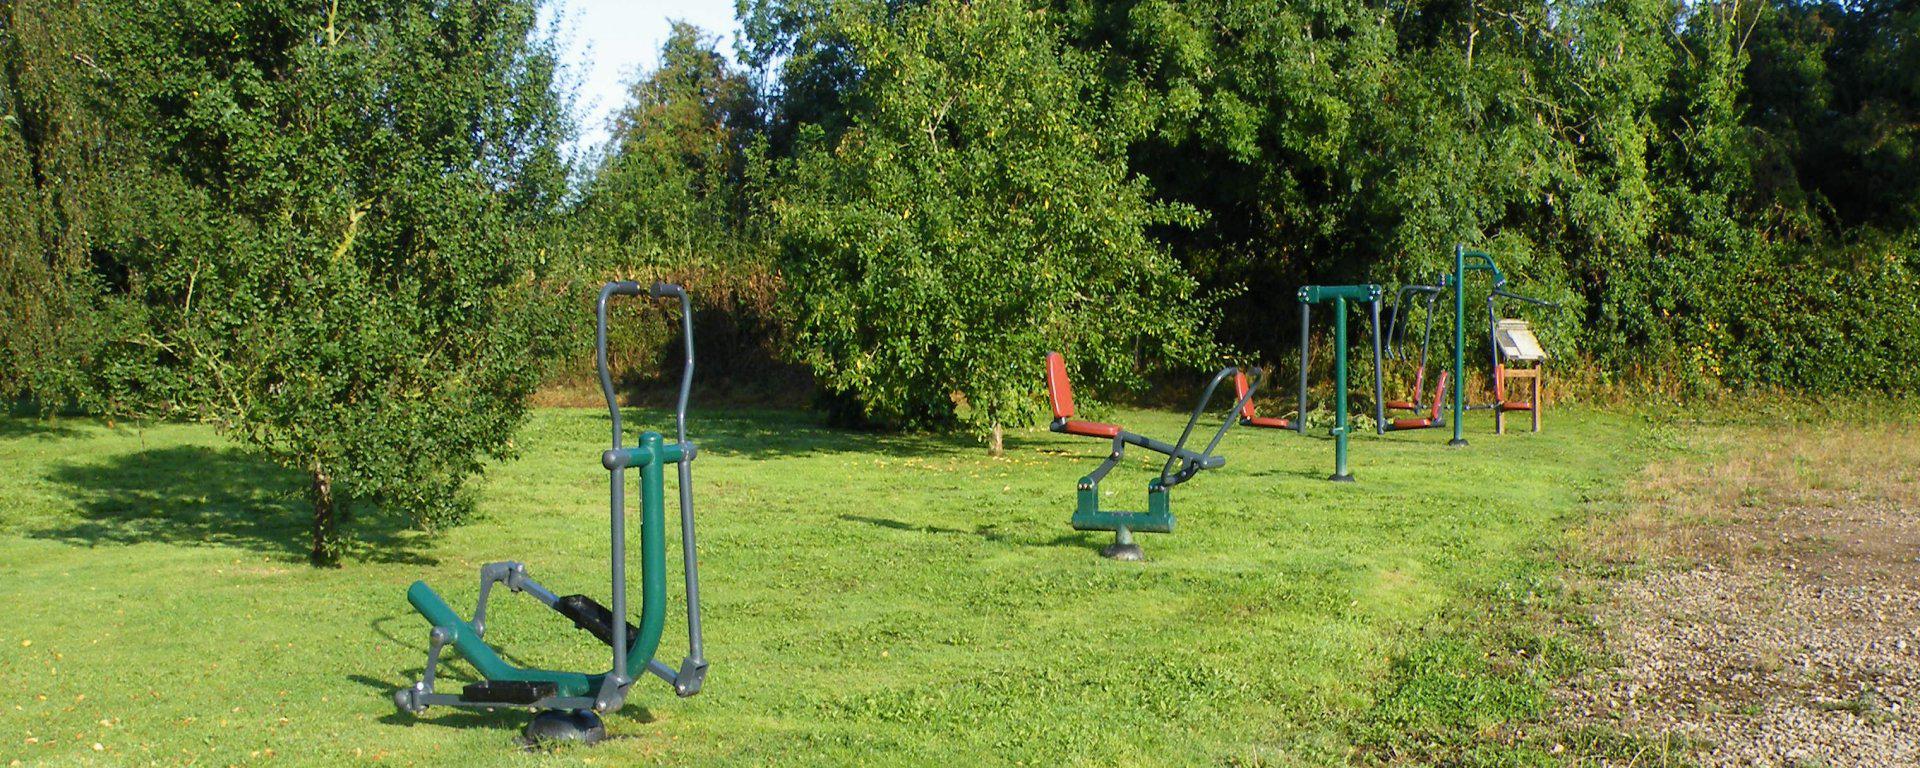 Outdoor gym equipment at Walls Bridge playground